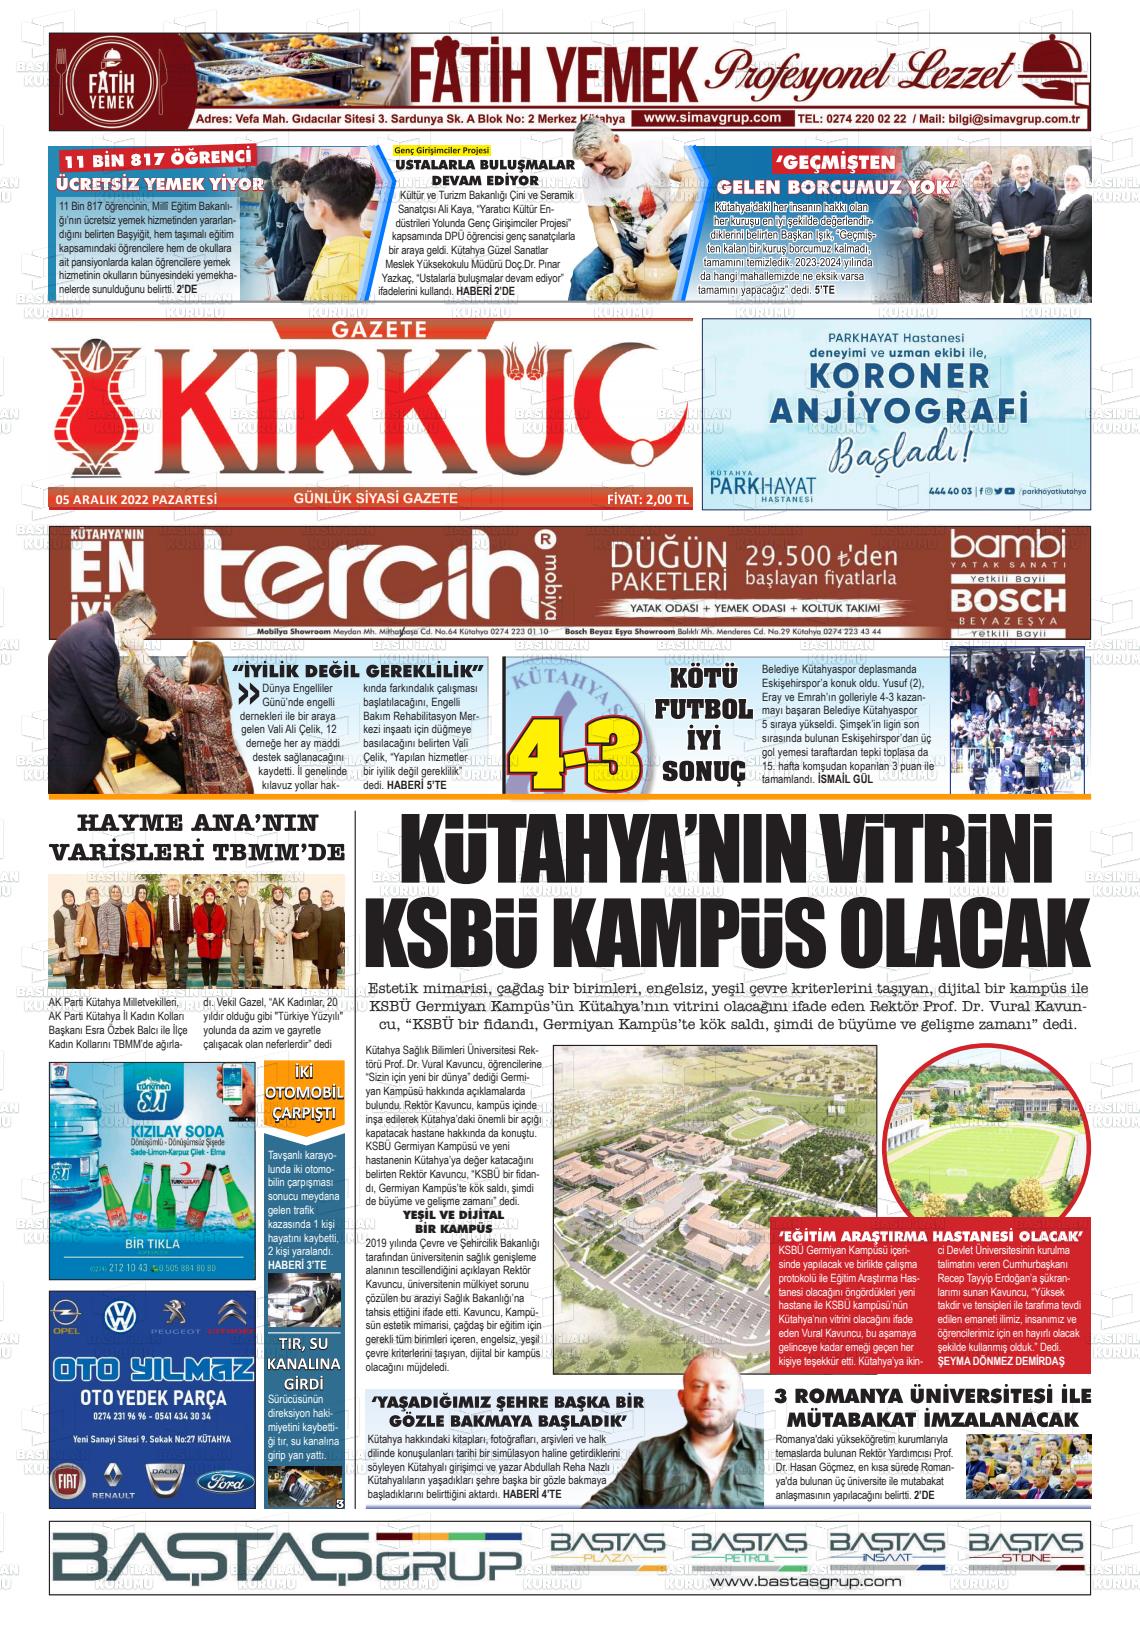 05 Aralık 2022 Gazete Kırküç Gazete Manşeti